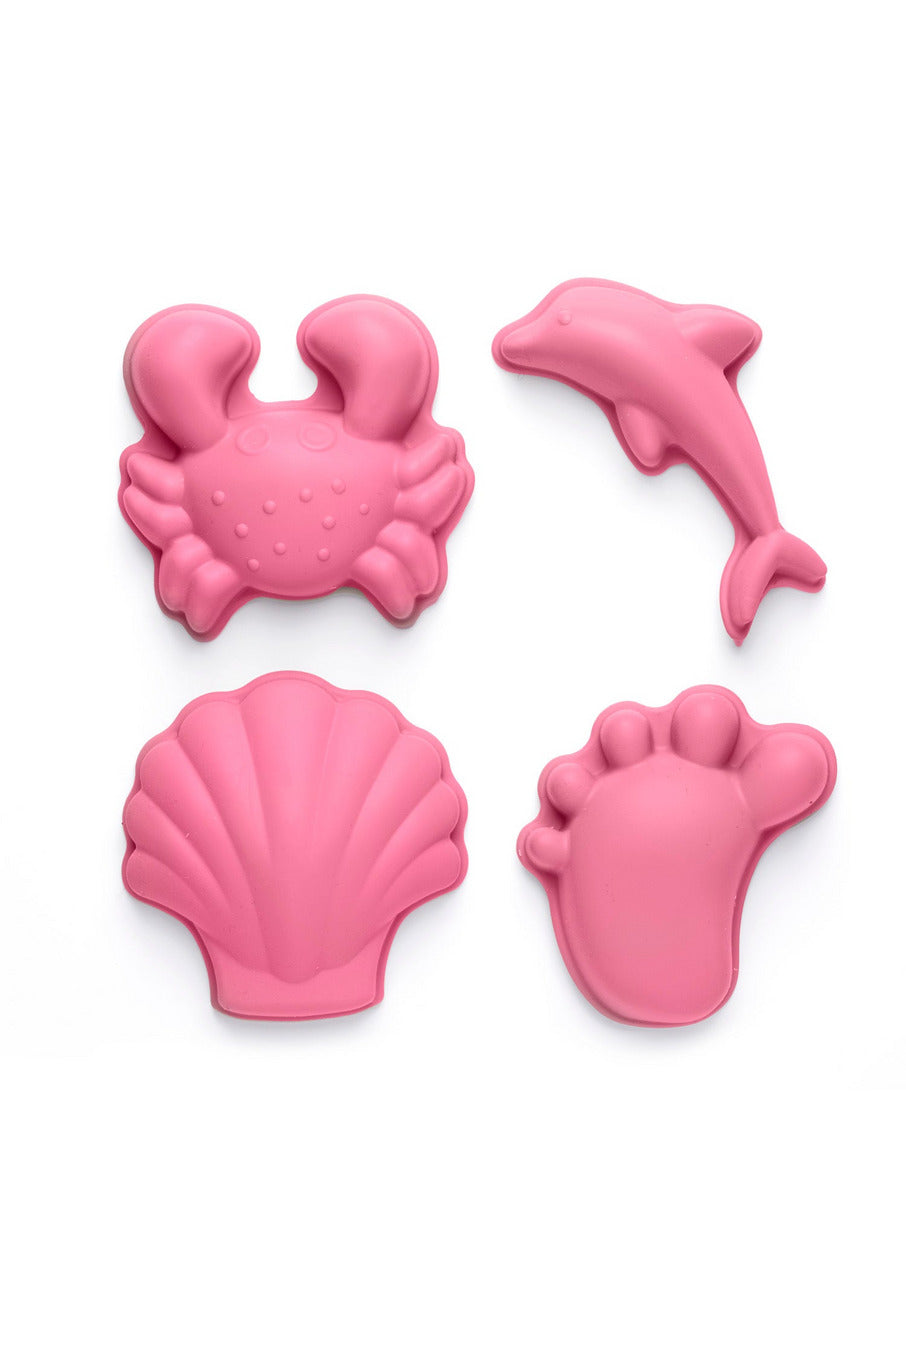 Scrunch Sand Moulds Footprint Set - Flamingo Pink